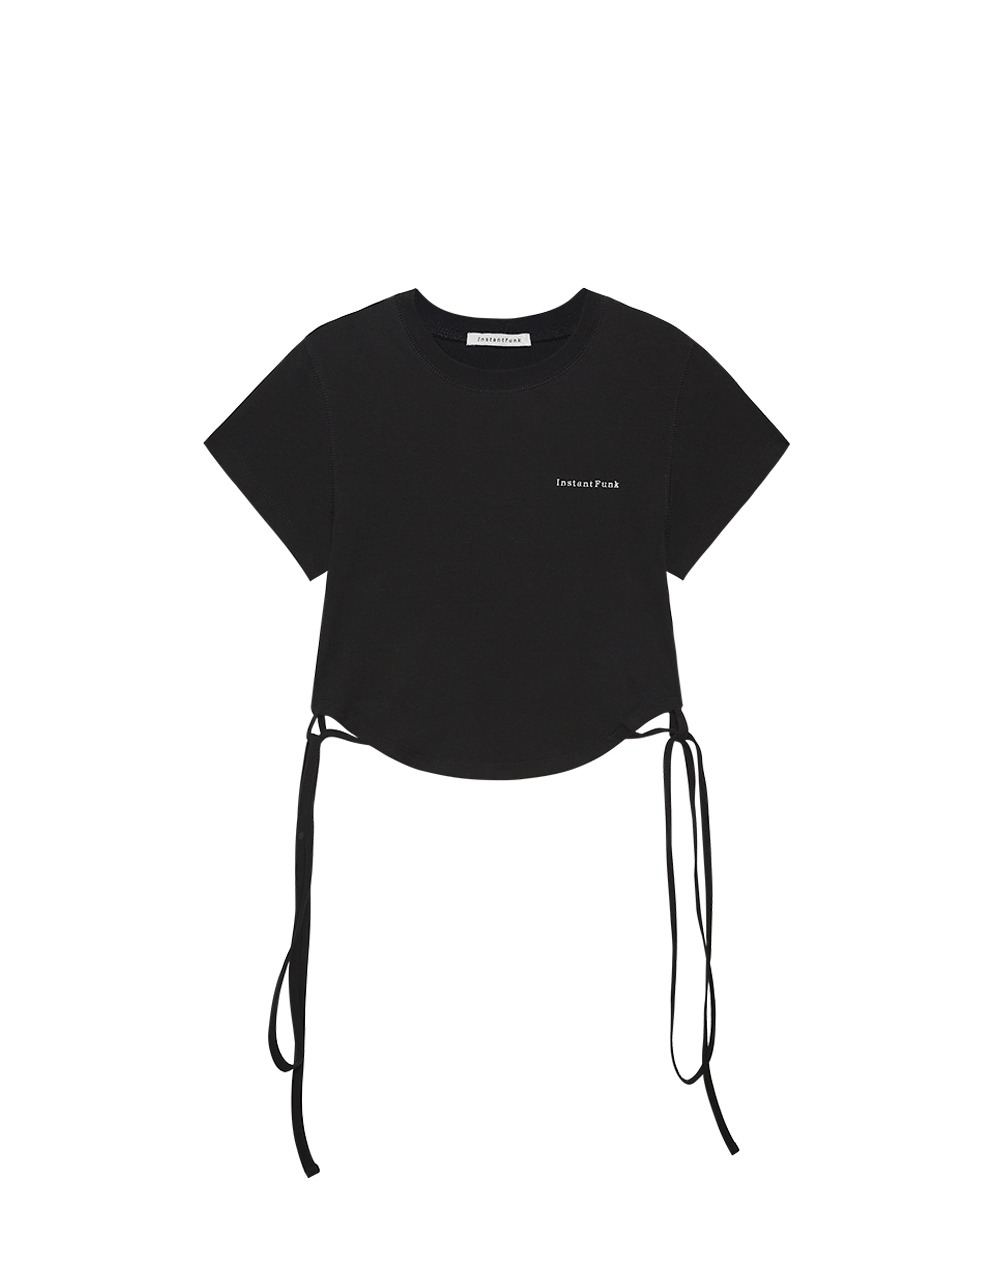 스트랩 크롭 티셔츠 - 블랙